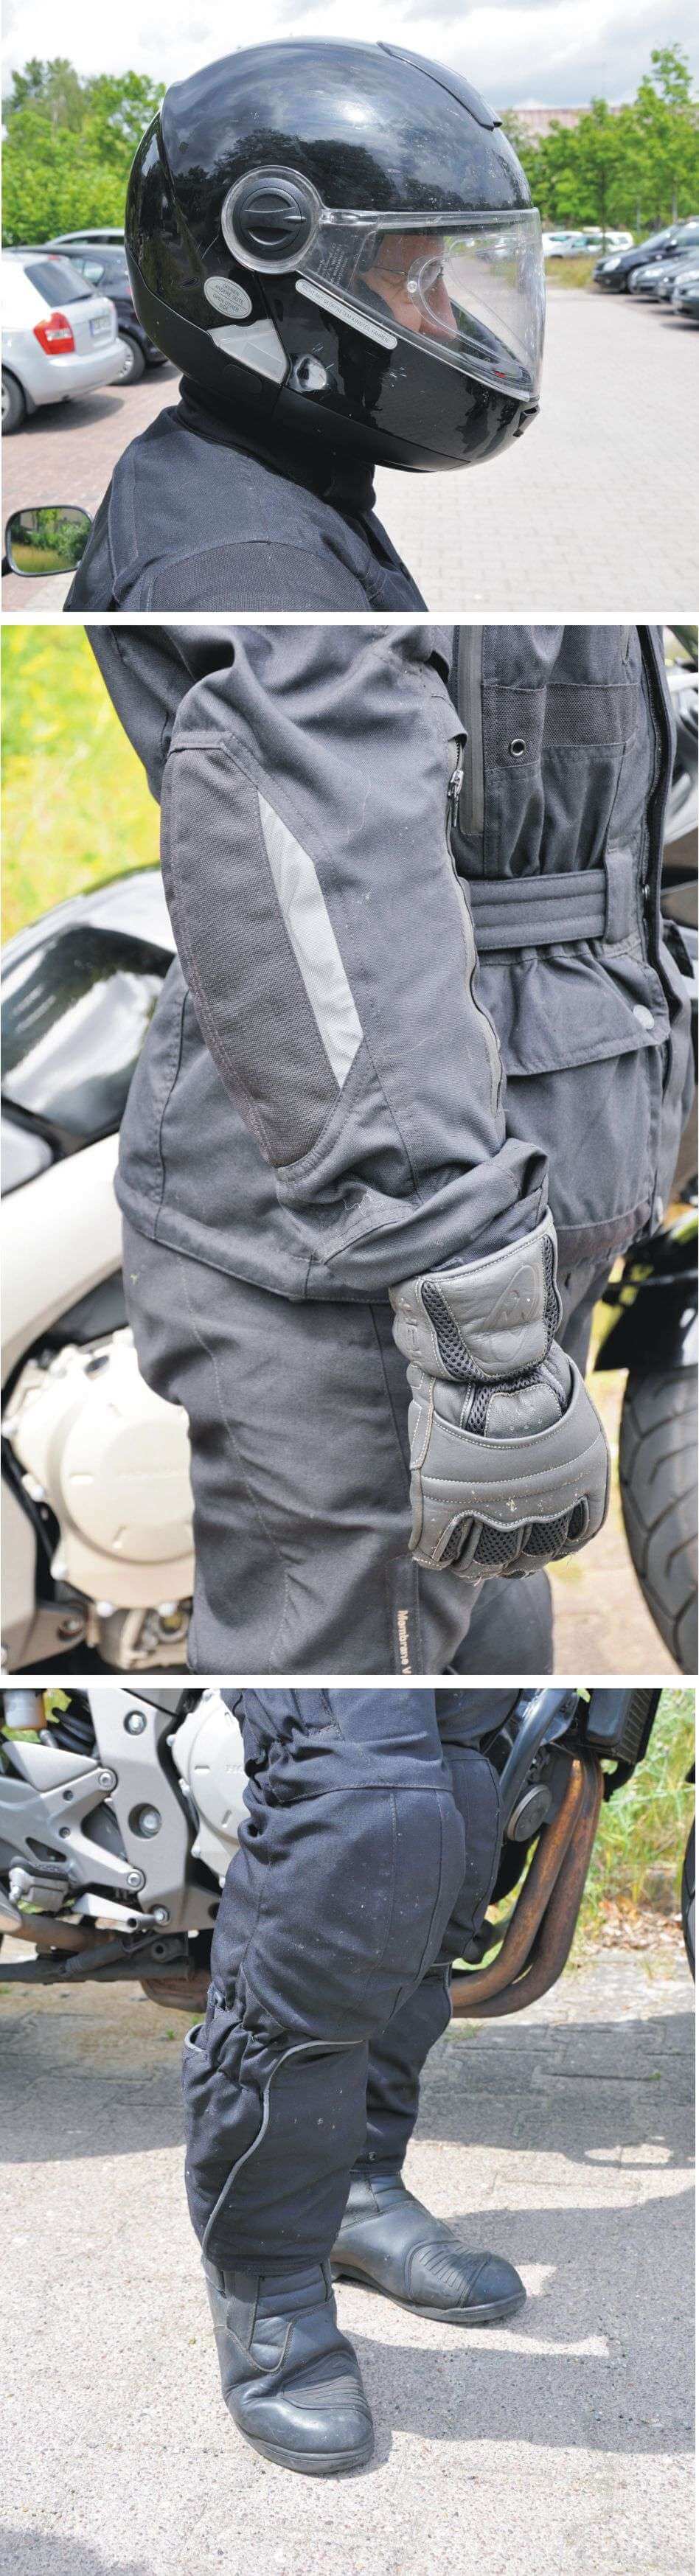 Auf den richtigen Schutz kommt es an: Polizisten klären Motorradfahrer auf